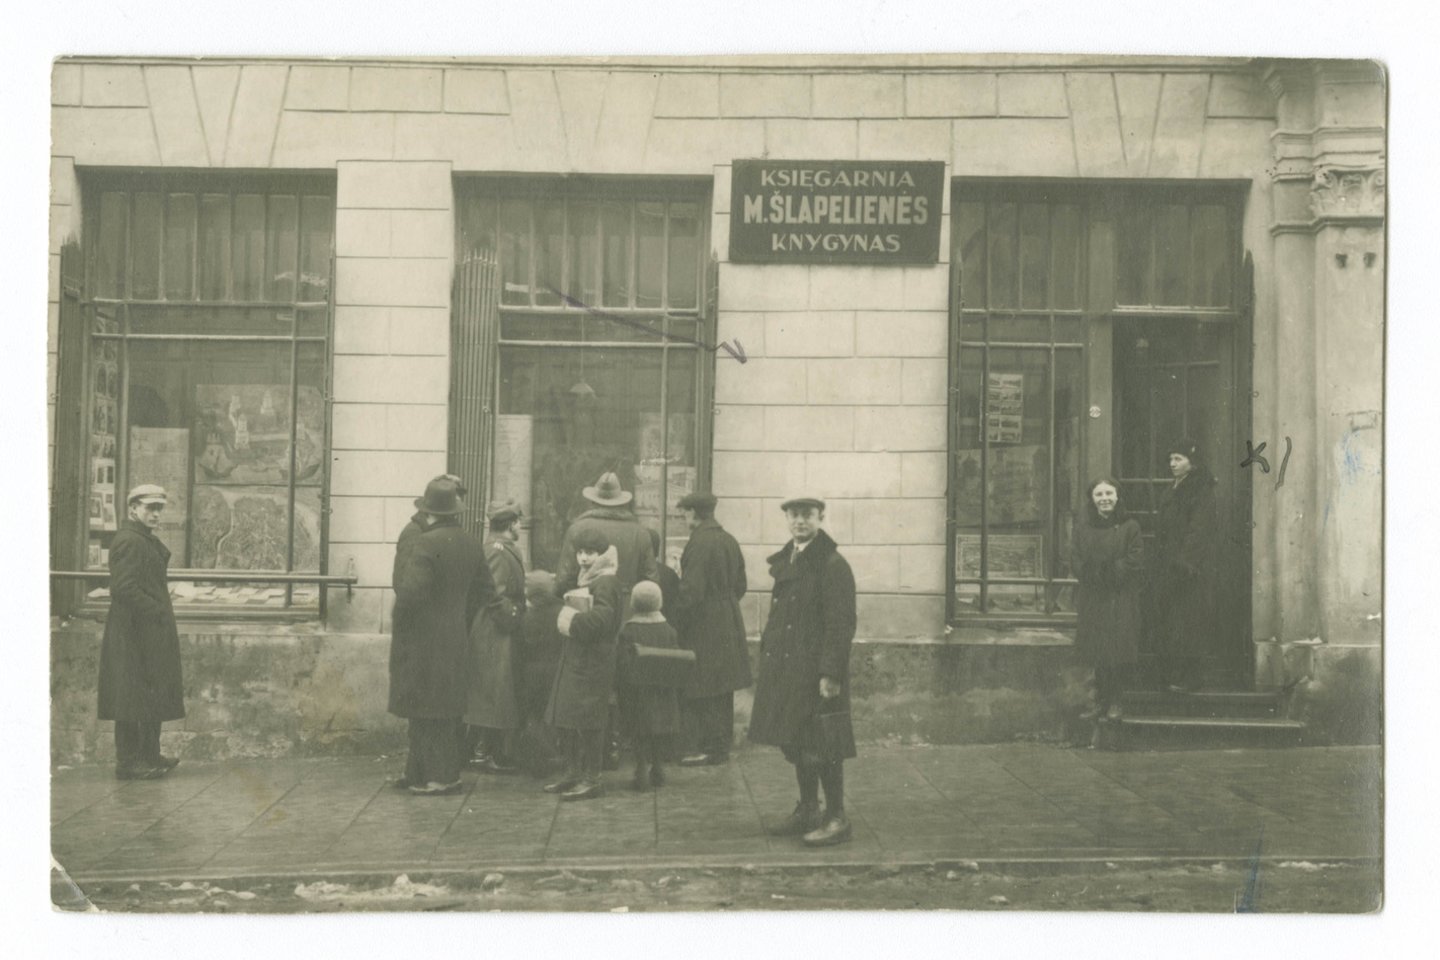  1931 m. Dominikonu gatveje esantis M. Šlapelienės lietuvių knygynas švenčia 25-erius gyvavimo metus. <br> Marijos ir Jurgio Slapeliu namo-muziejaus archyvo nuotr.